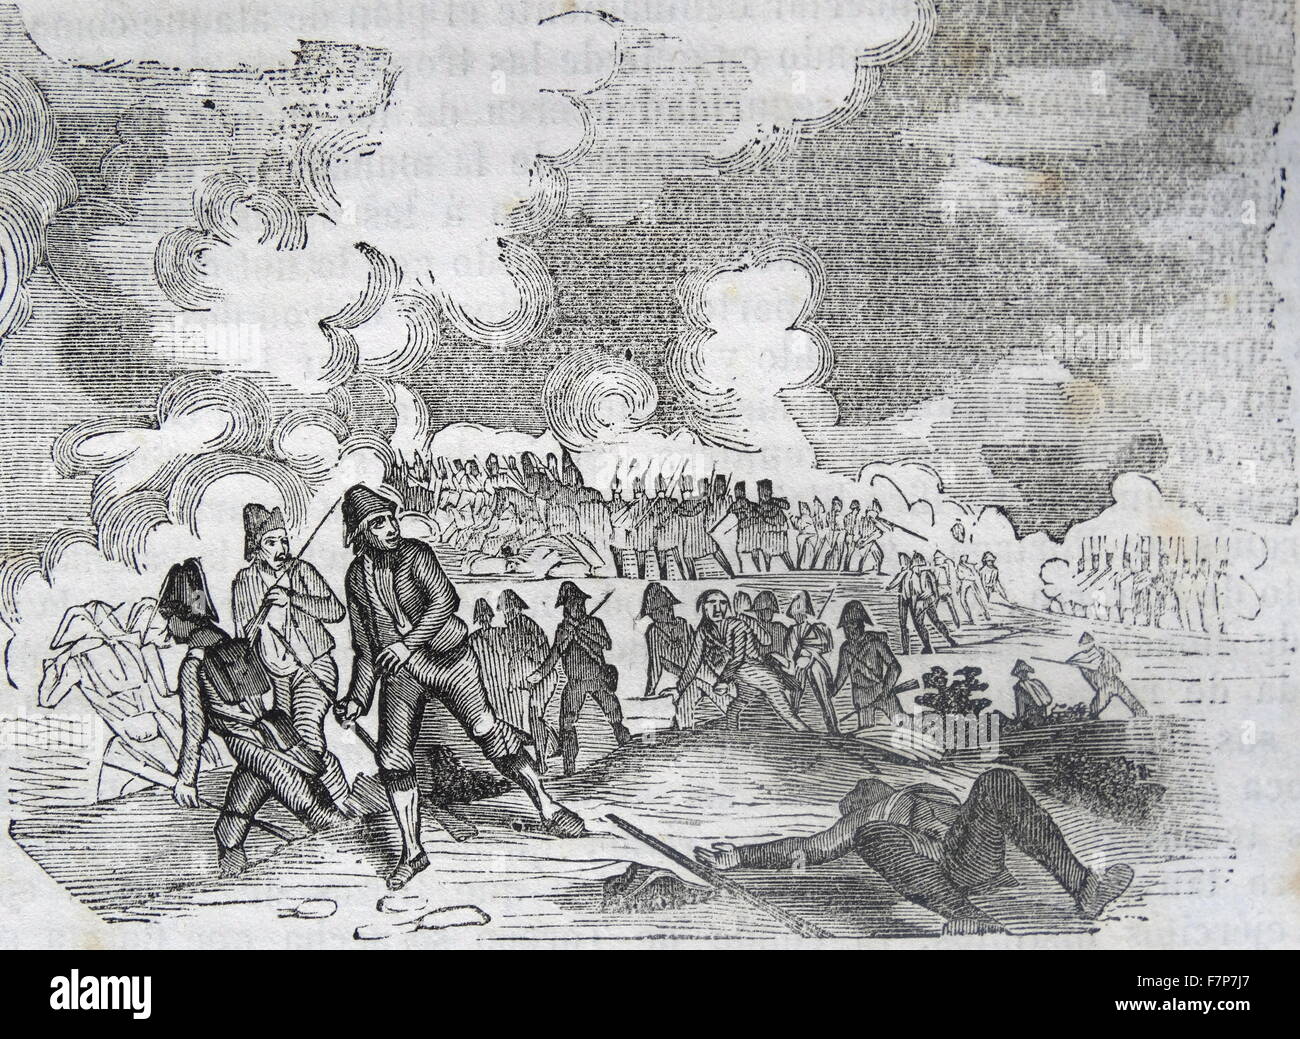 Darstellung der Schlacht von Medina de Rioseco Darstellung. Kämpfte während des Unabhängigkeitskrieges am 14. Juli 1808 eine kombinierte Einrichtung der spanischen Miliz und Stammgäste zog, die französische Linie der Kommunikation nach Madrid zu Bruch. Vom Jahre 1808 Stockfoto